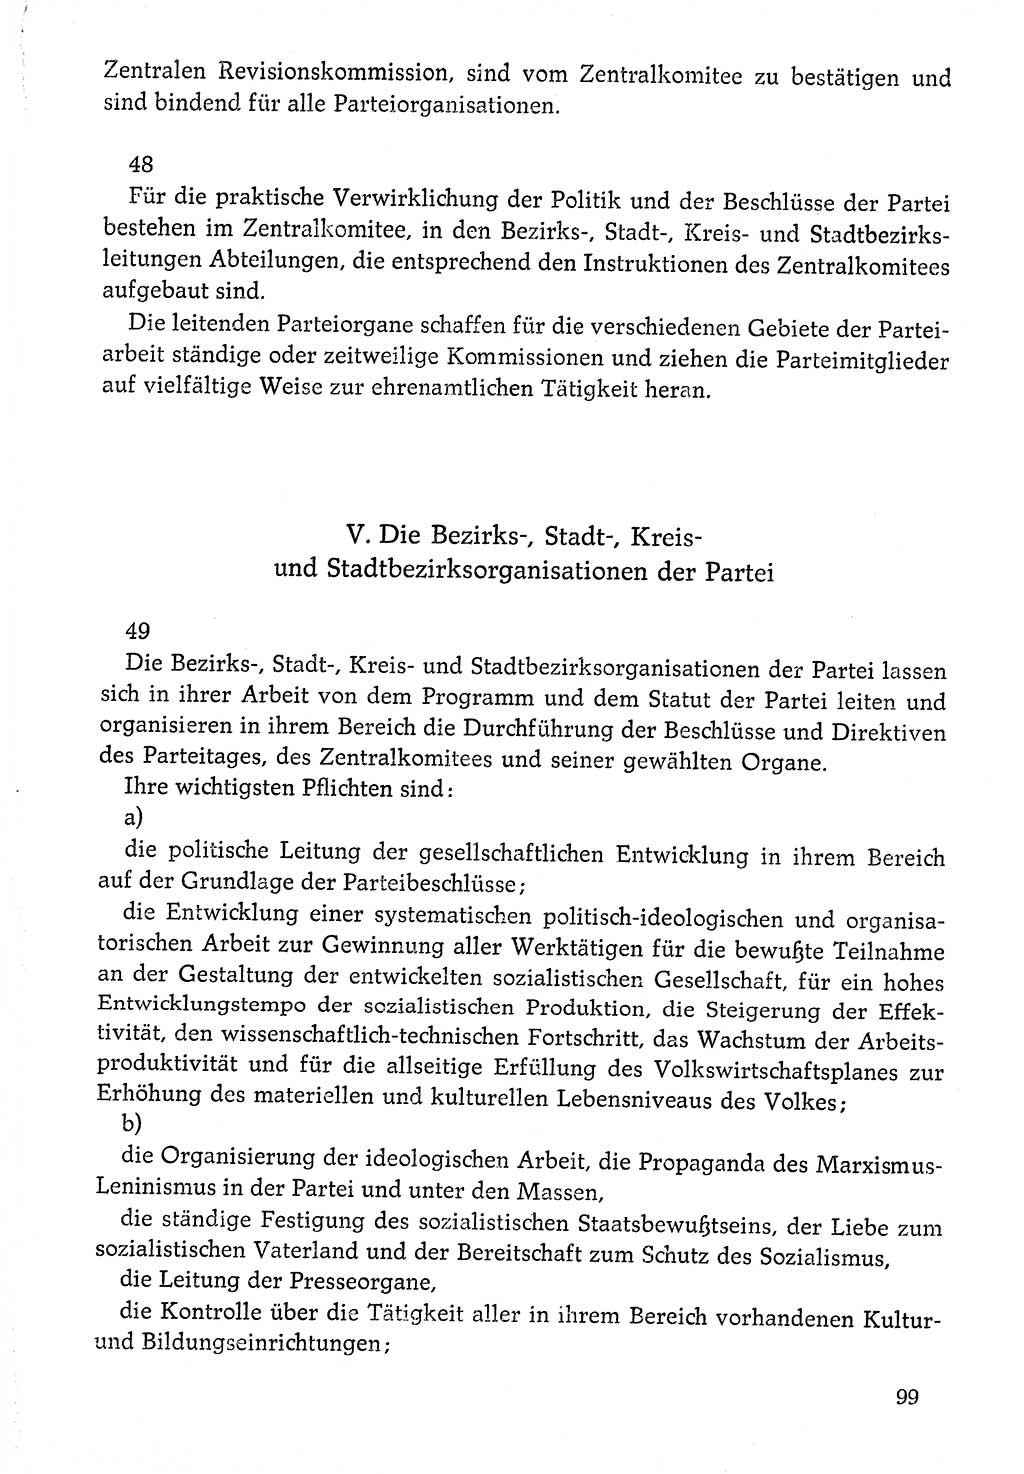 Dokumente der Sozialistischen Einheitspartei Deutschlands (SED) [Deutsche Demokratische Republik (DDR)] 1976-1977, Seite 99 (Dok. SED DDR 1976-1977, S. 99)